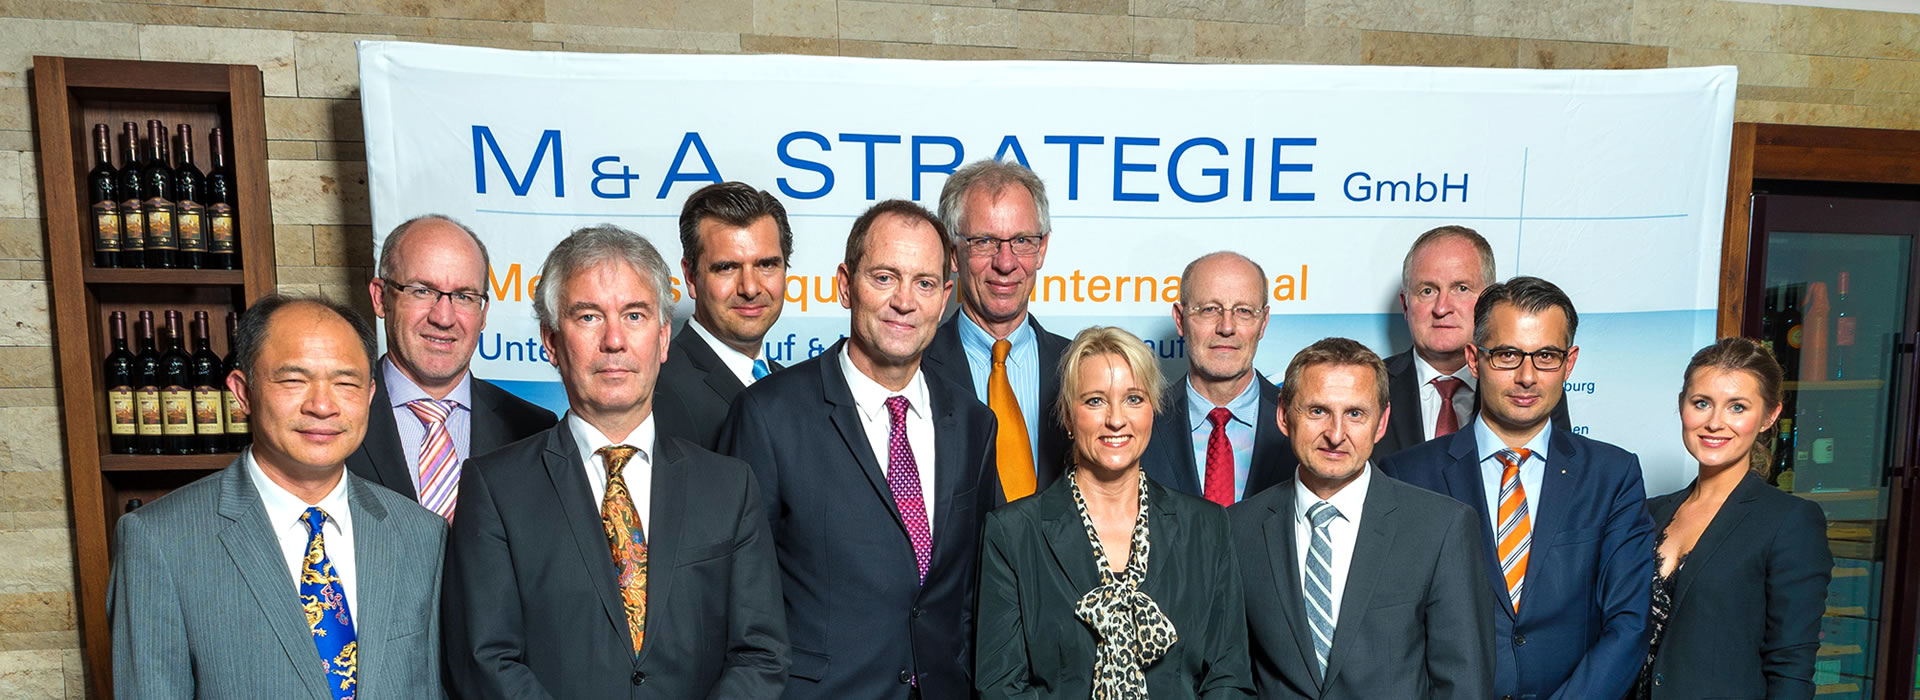 Das Beraternetzwerk der M & A STRATEGIE GmbH